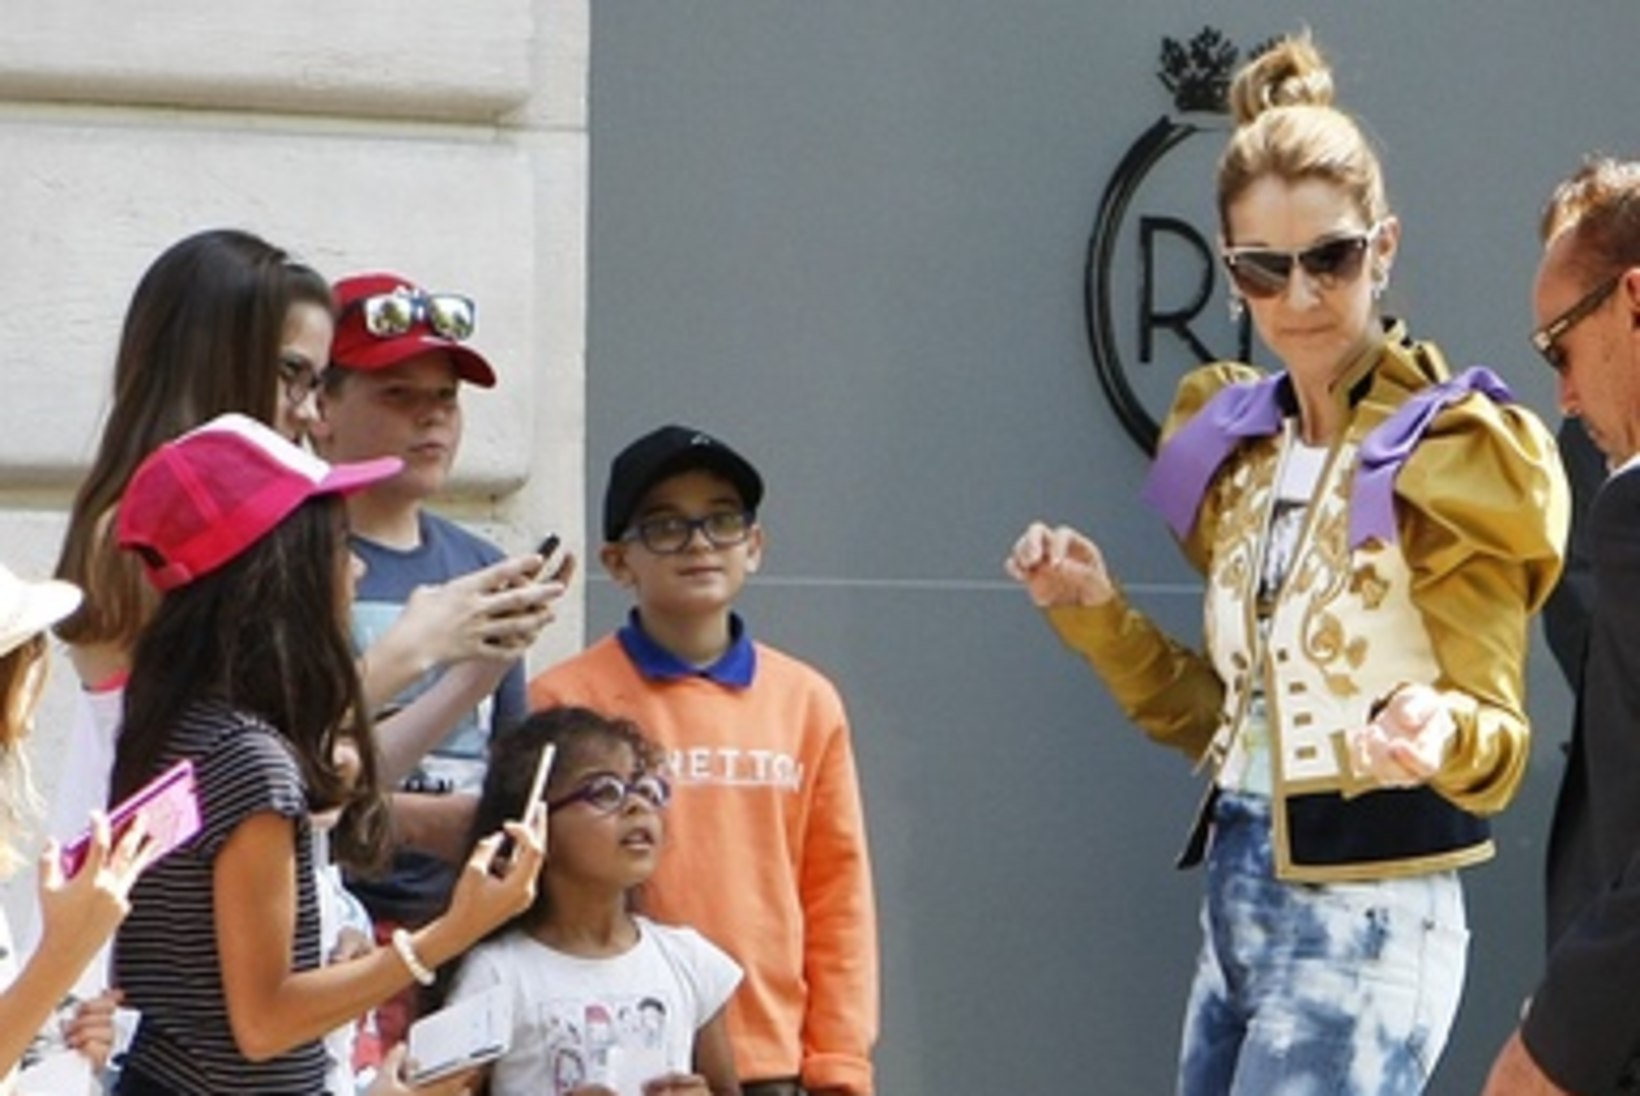 Ekspert: Céline Dioni riietus võib viidata psüühilistele probleemidele